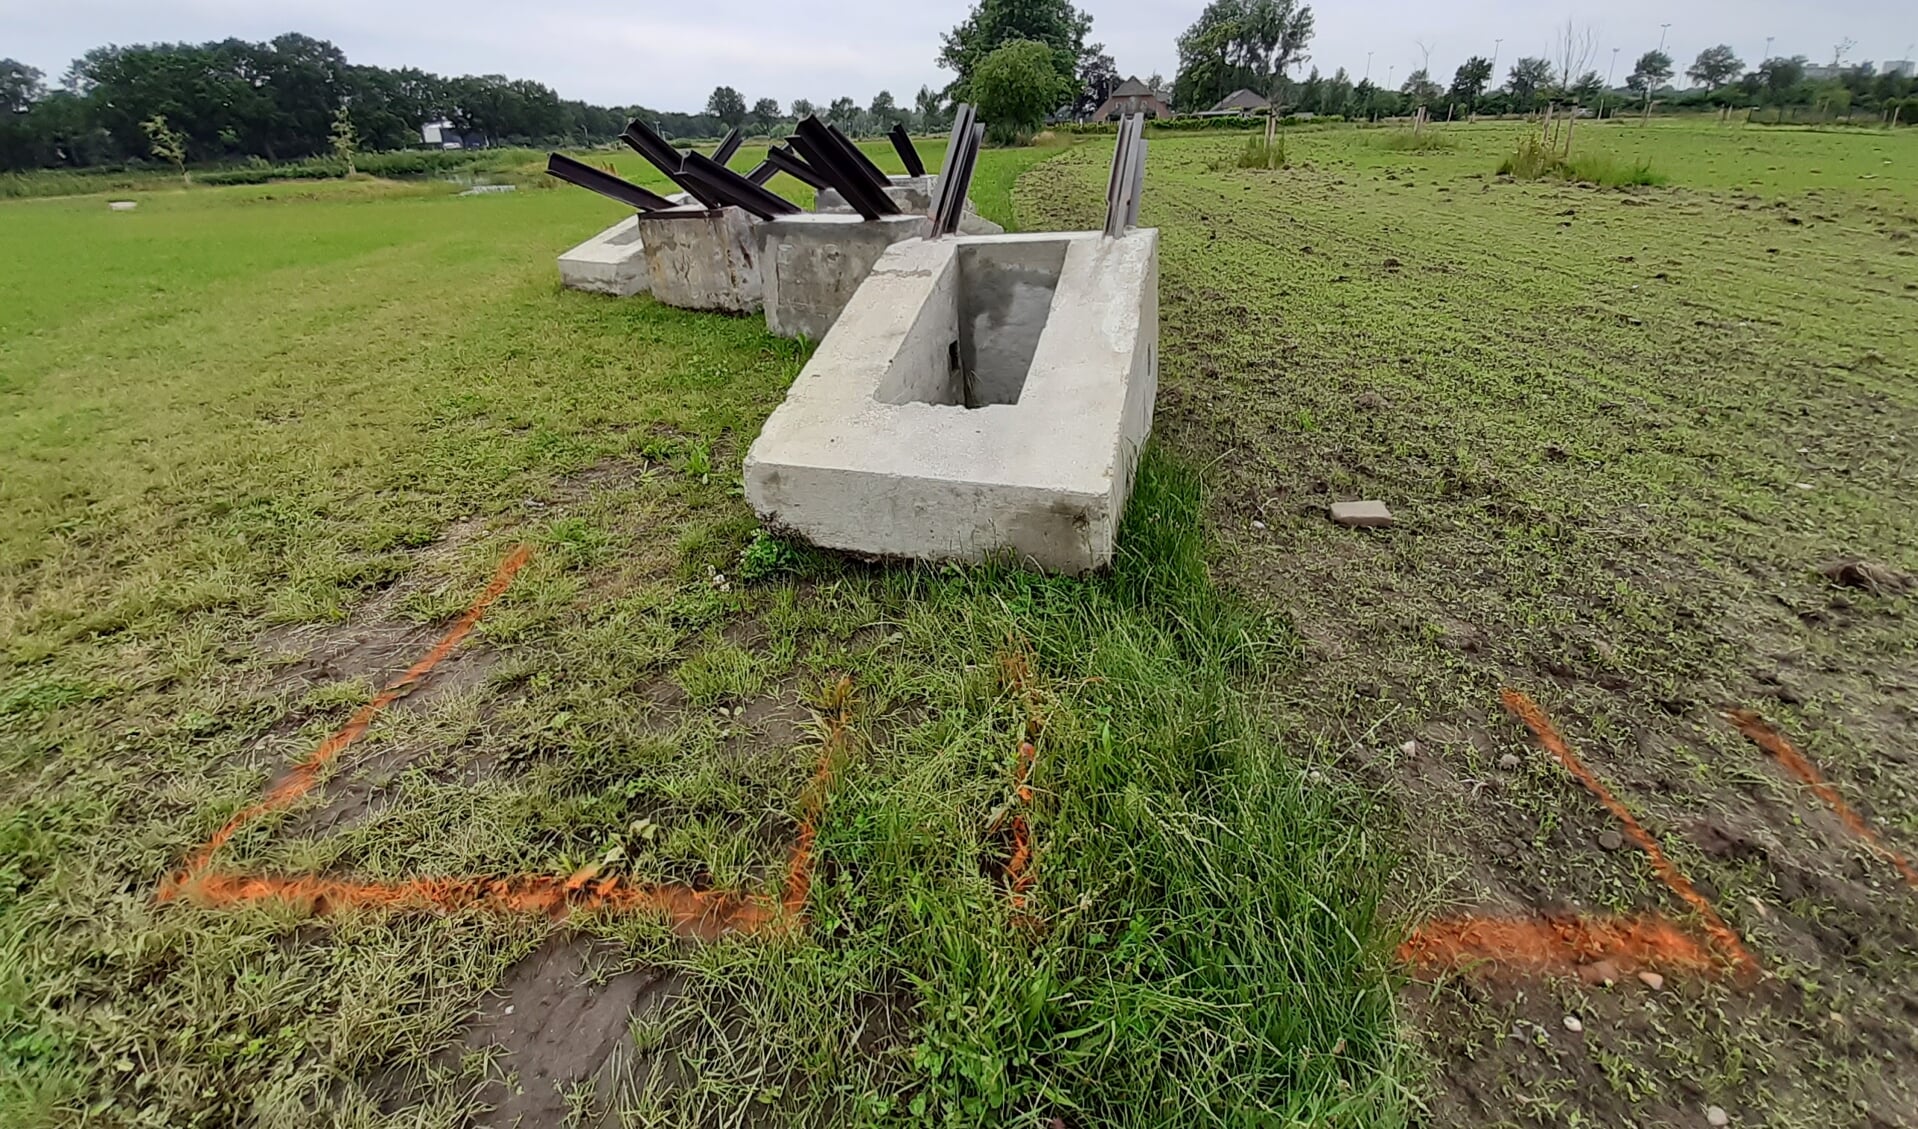 De gerestaureerde betonnen tankversperringen liggen te wachten tot ze worden ingegraven. Op de grond is al aangegeven waar ze moeten komen.